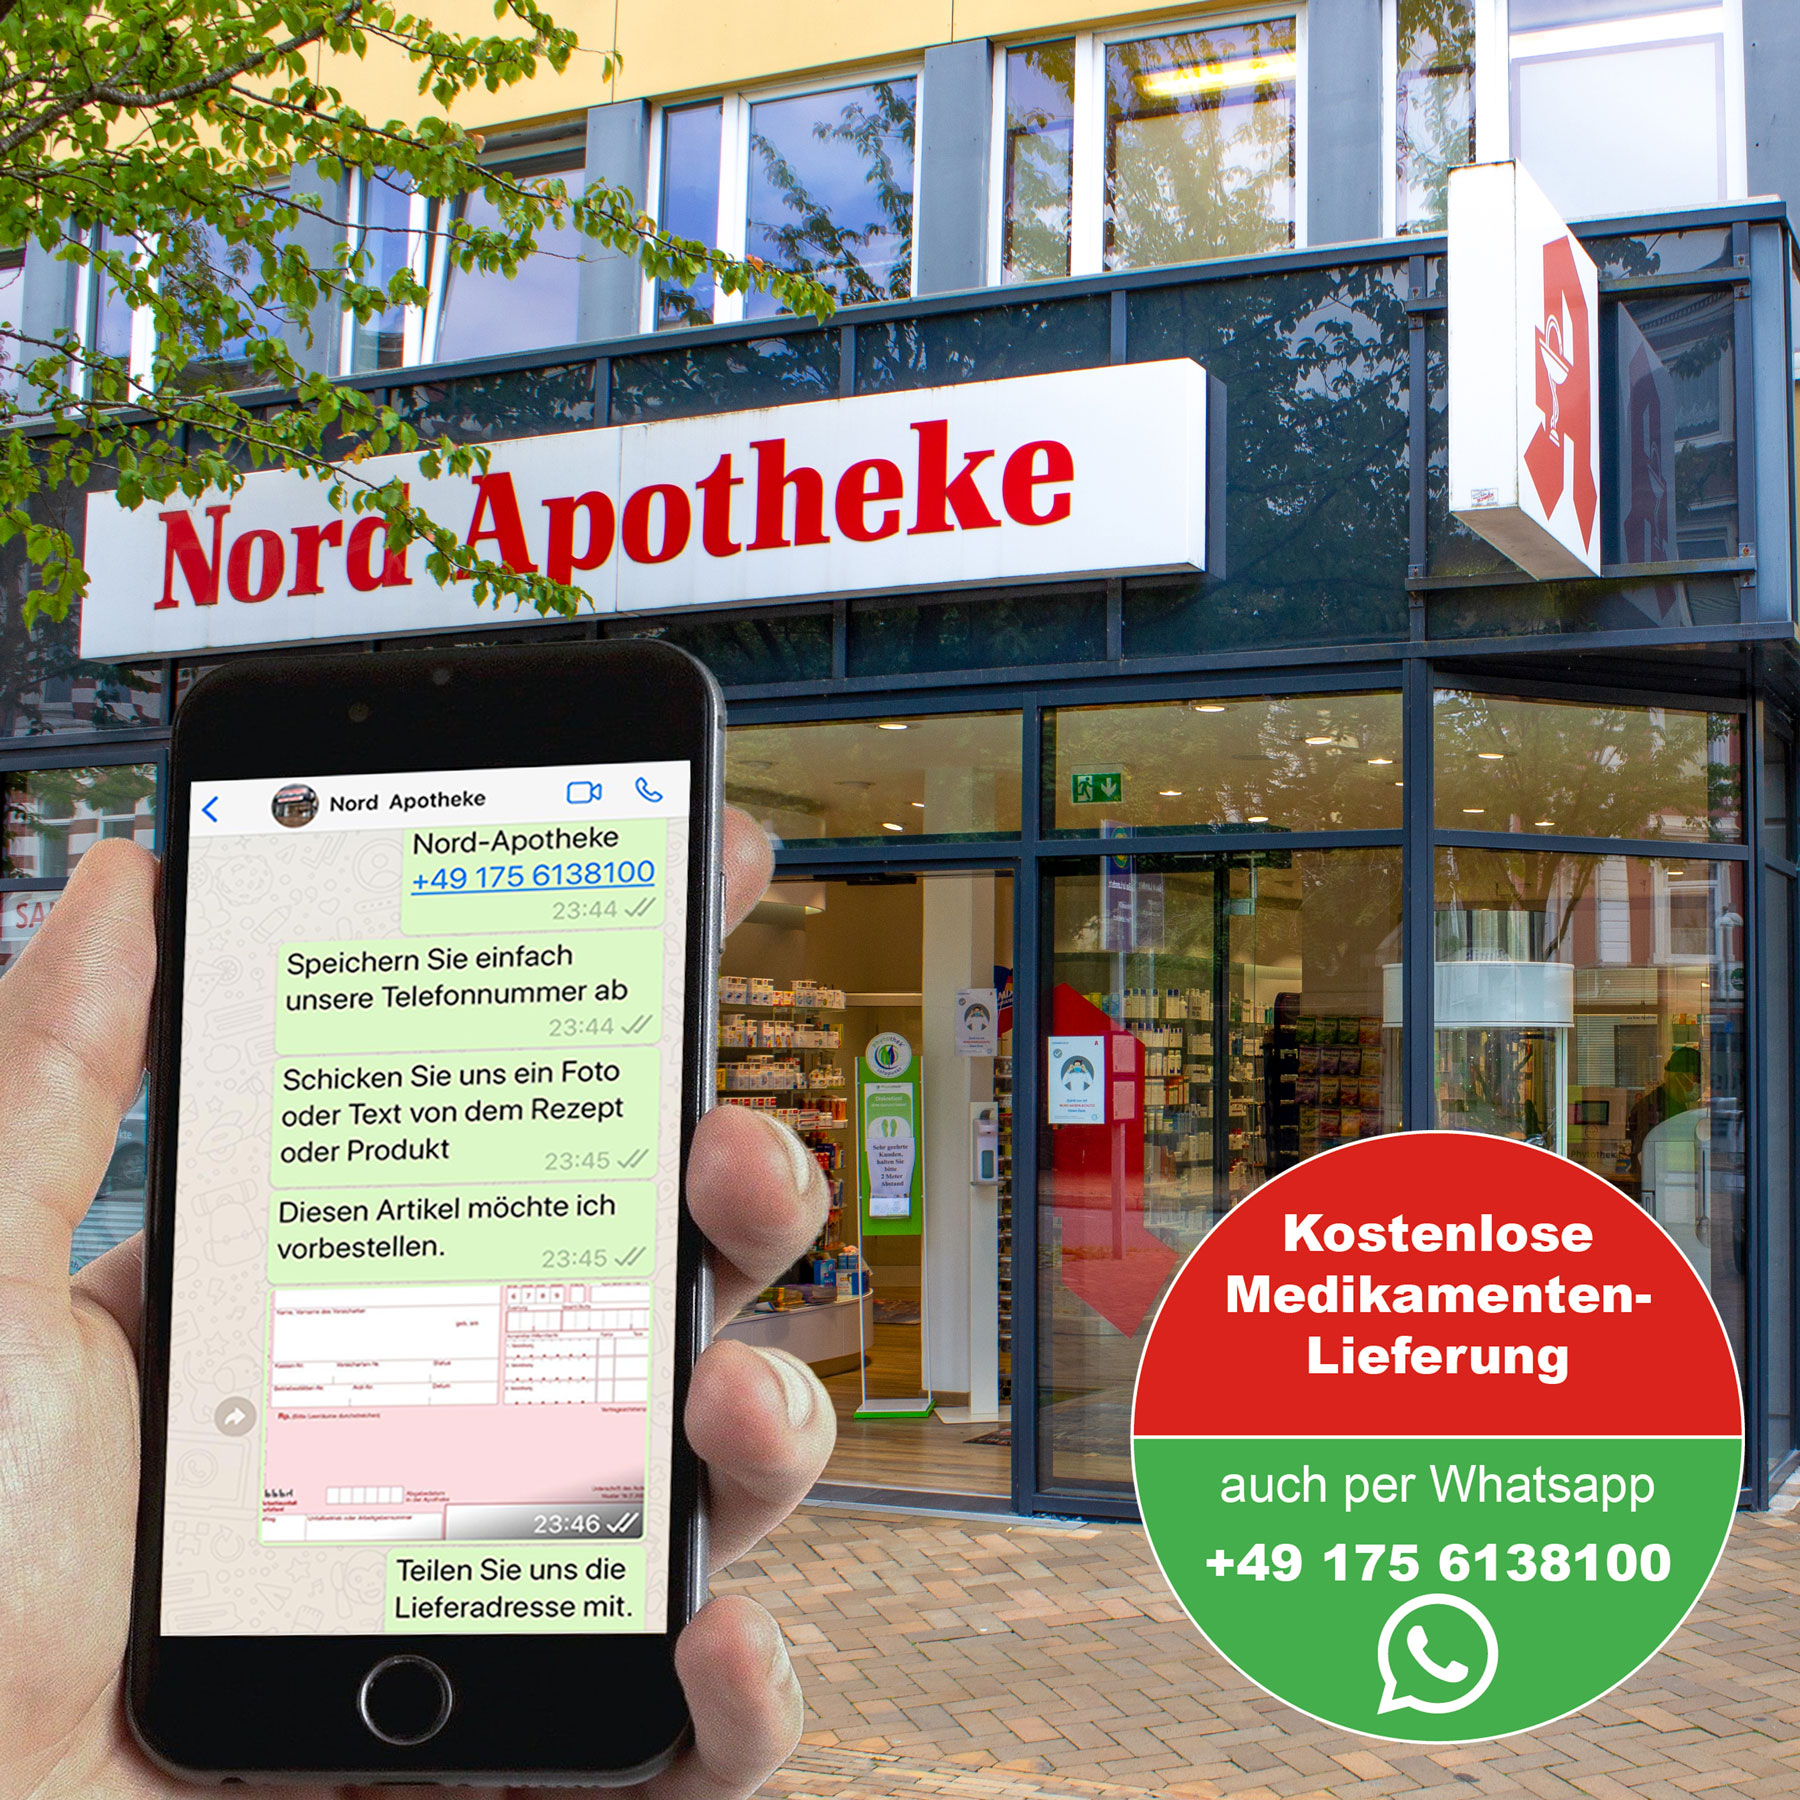 Nord-Apotheke Whatsapp